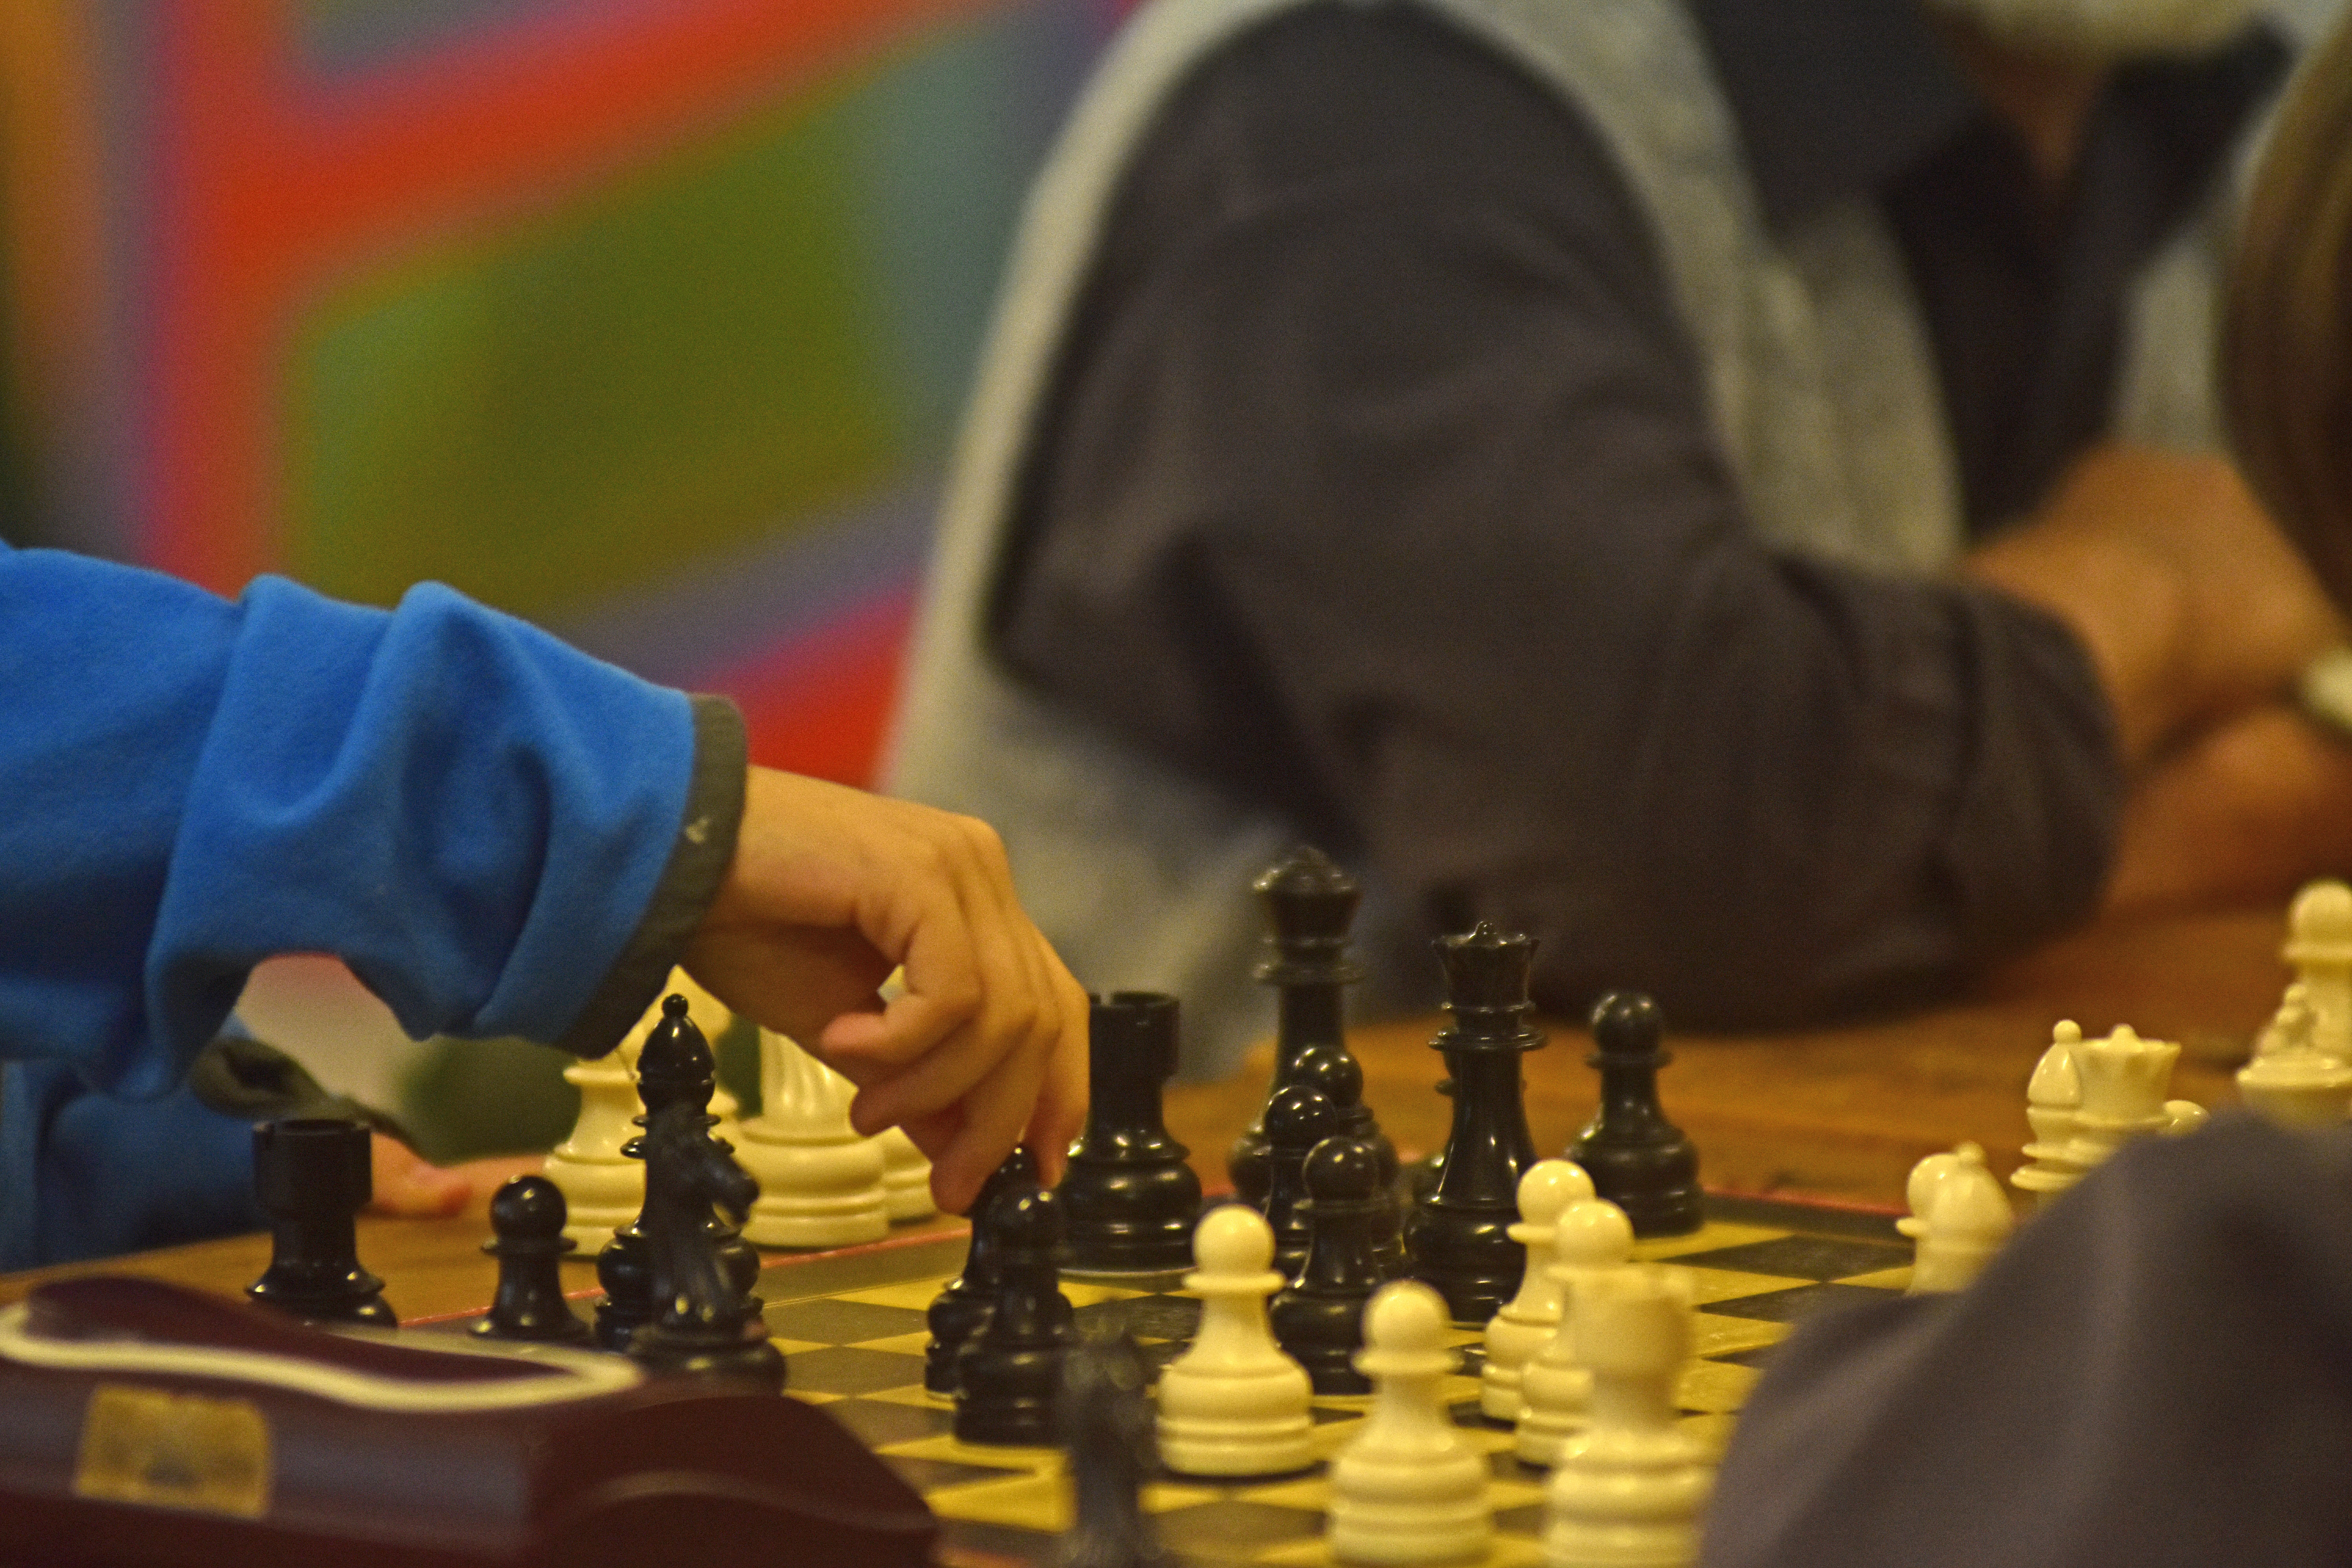 Entre el crecimiento de la pandemia y el estreno de la serie, el ajedrez disfruta un buen momento. (Foto: Andrés Maripe)